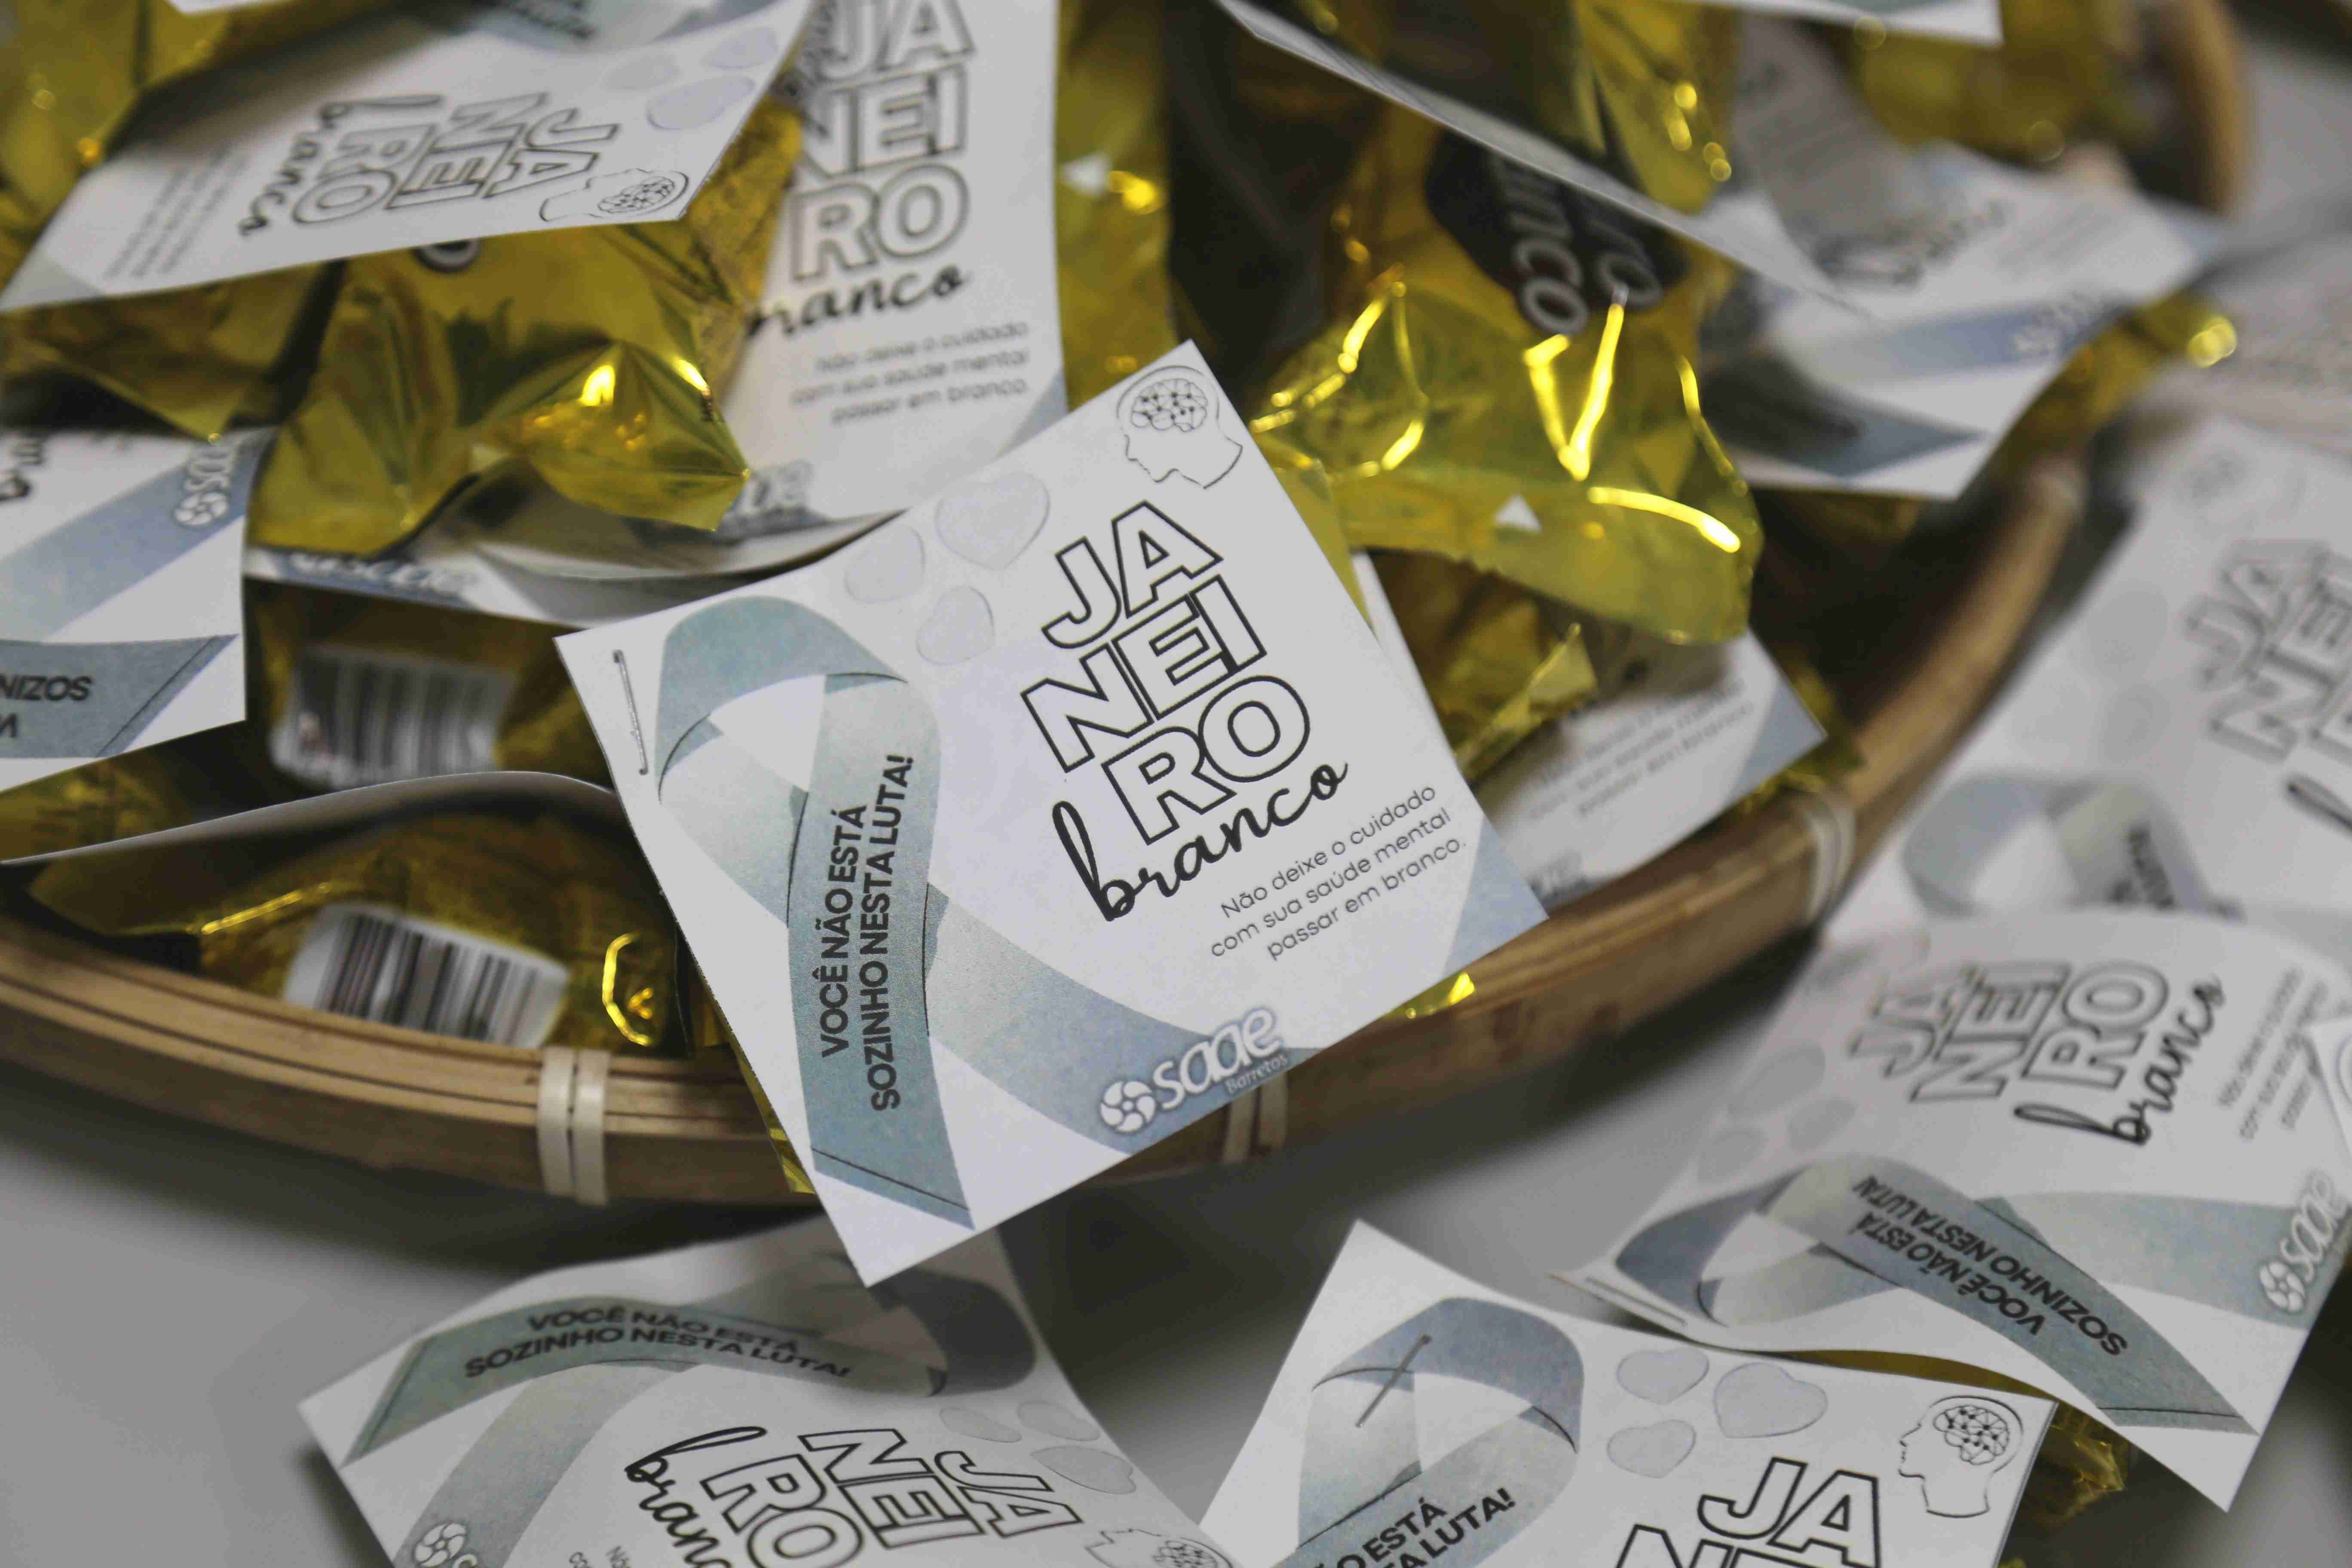 SAAE Barretos engaja na Campanha Janeiro Branco com distribuição de bombons de chocolate branco para conscientização da saúde mental